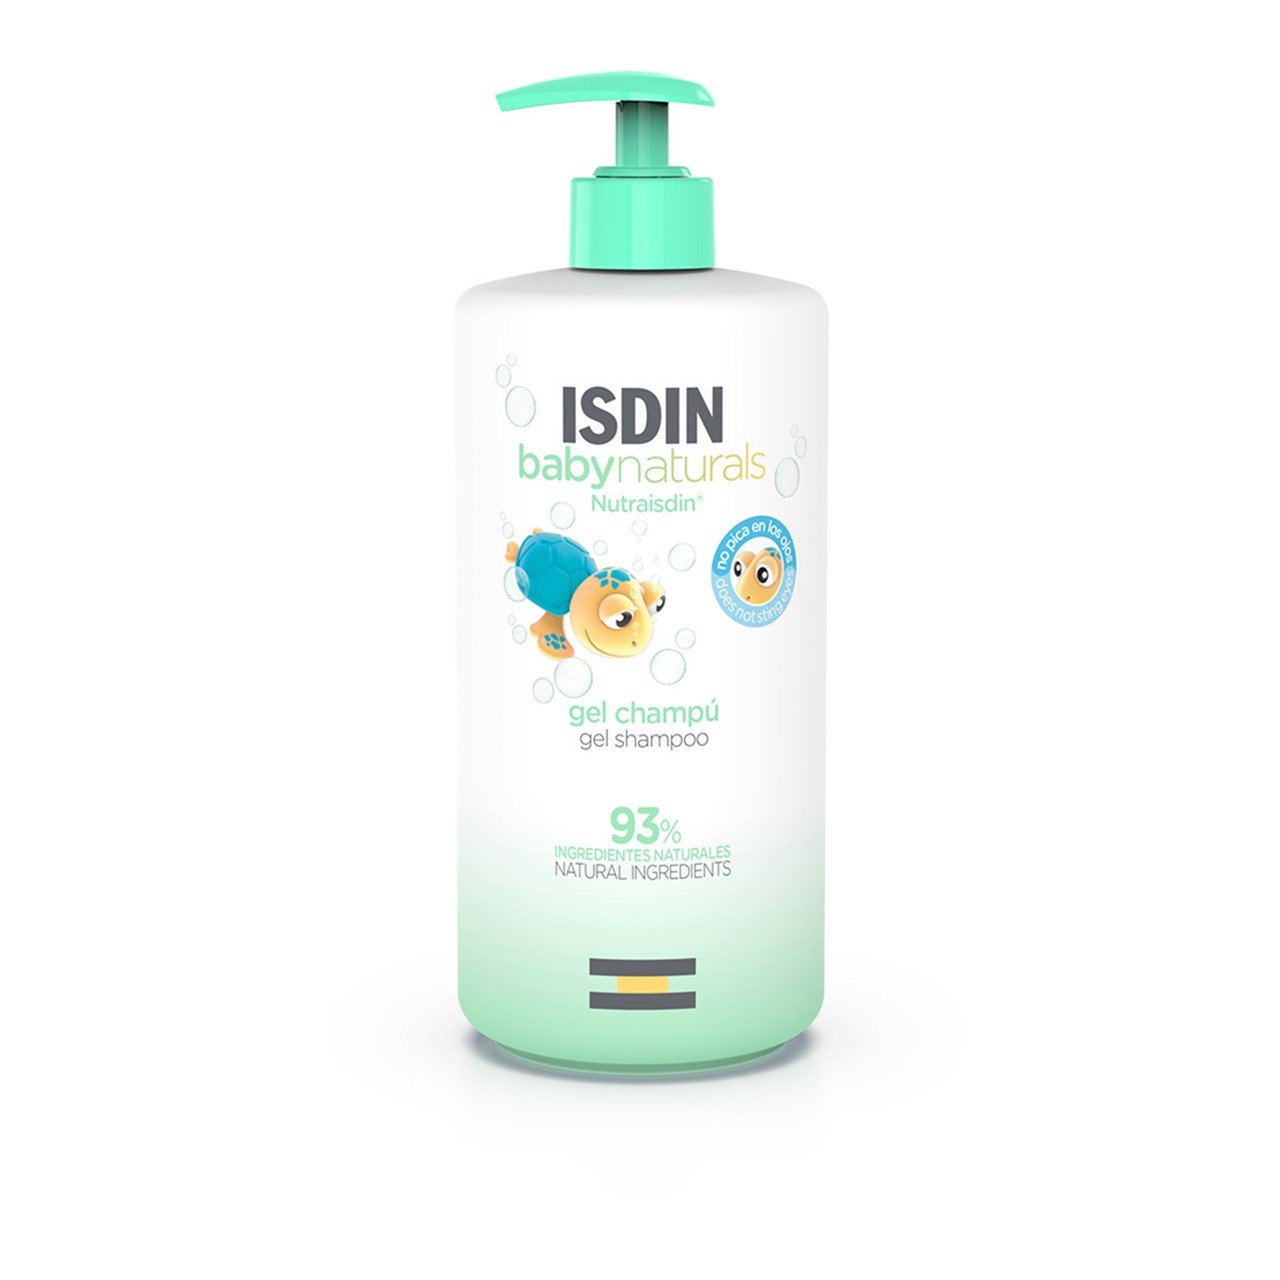 ISDIN Baby Naturals Gel Shampoo 750ml